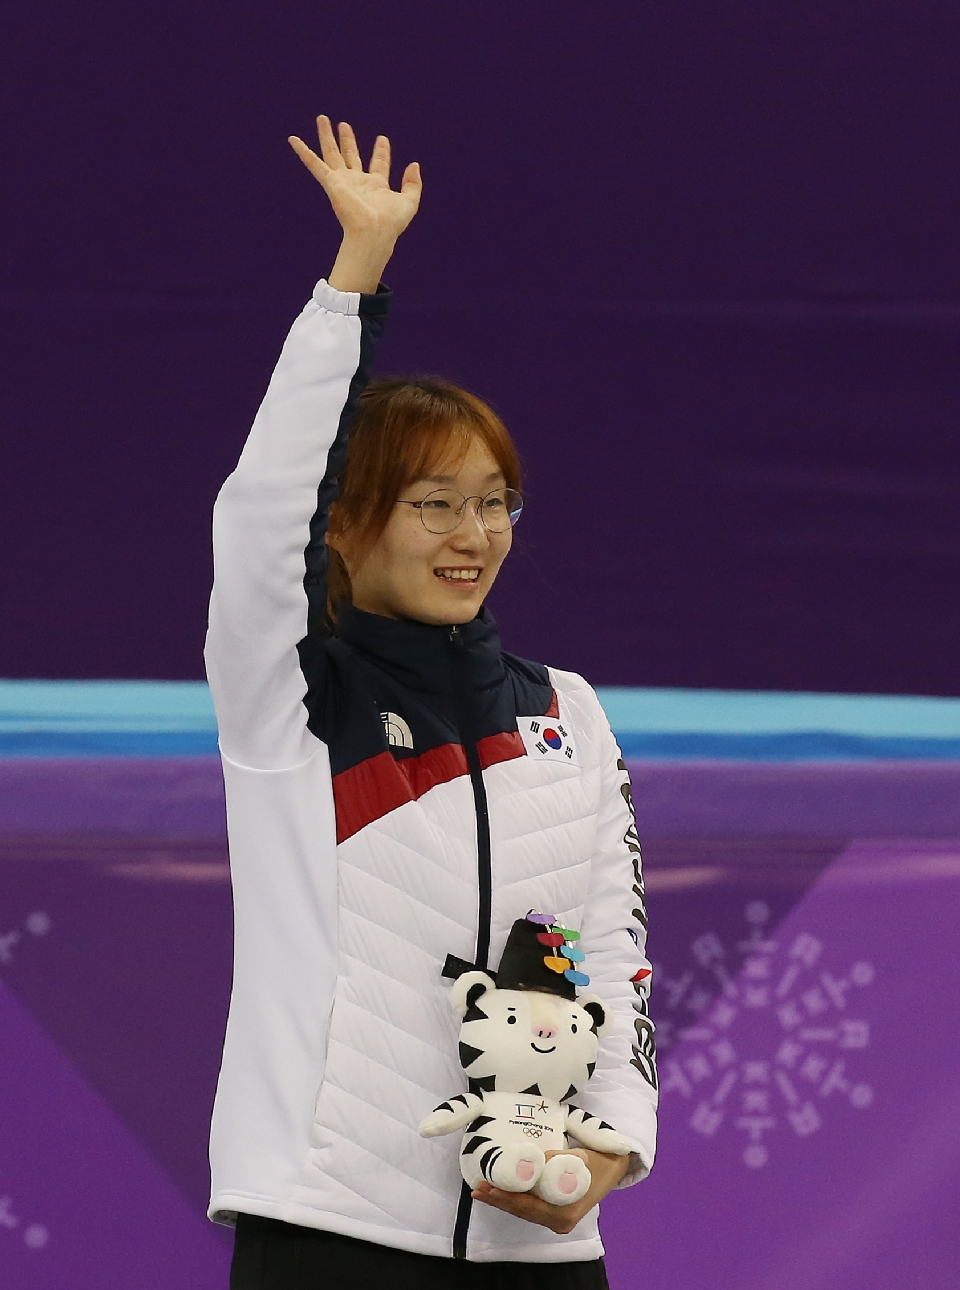 쇼트트랙 여자 1,500m 결승 경기, 최민정 선수 금메달